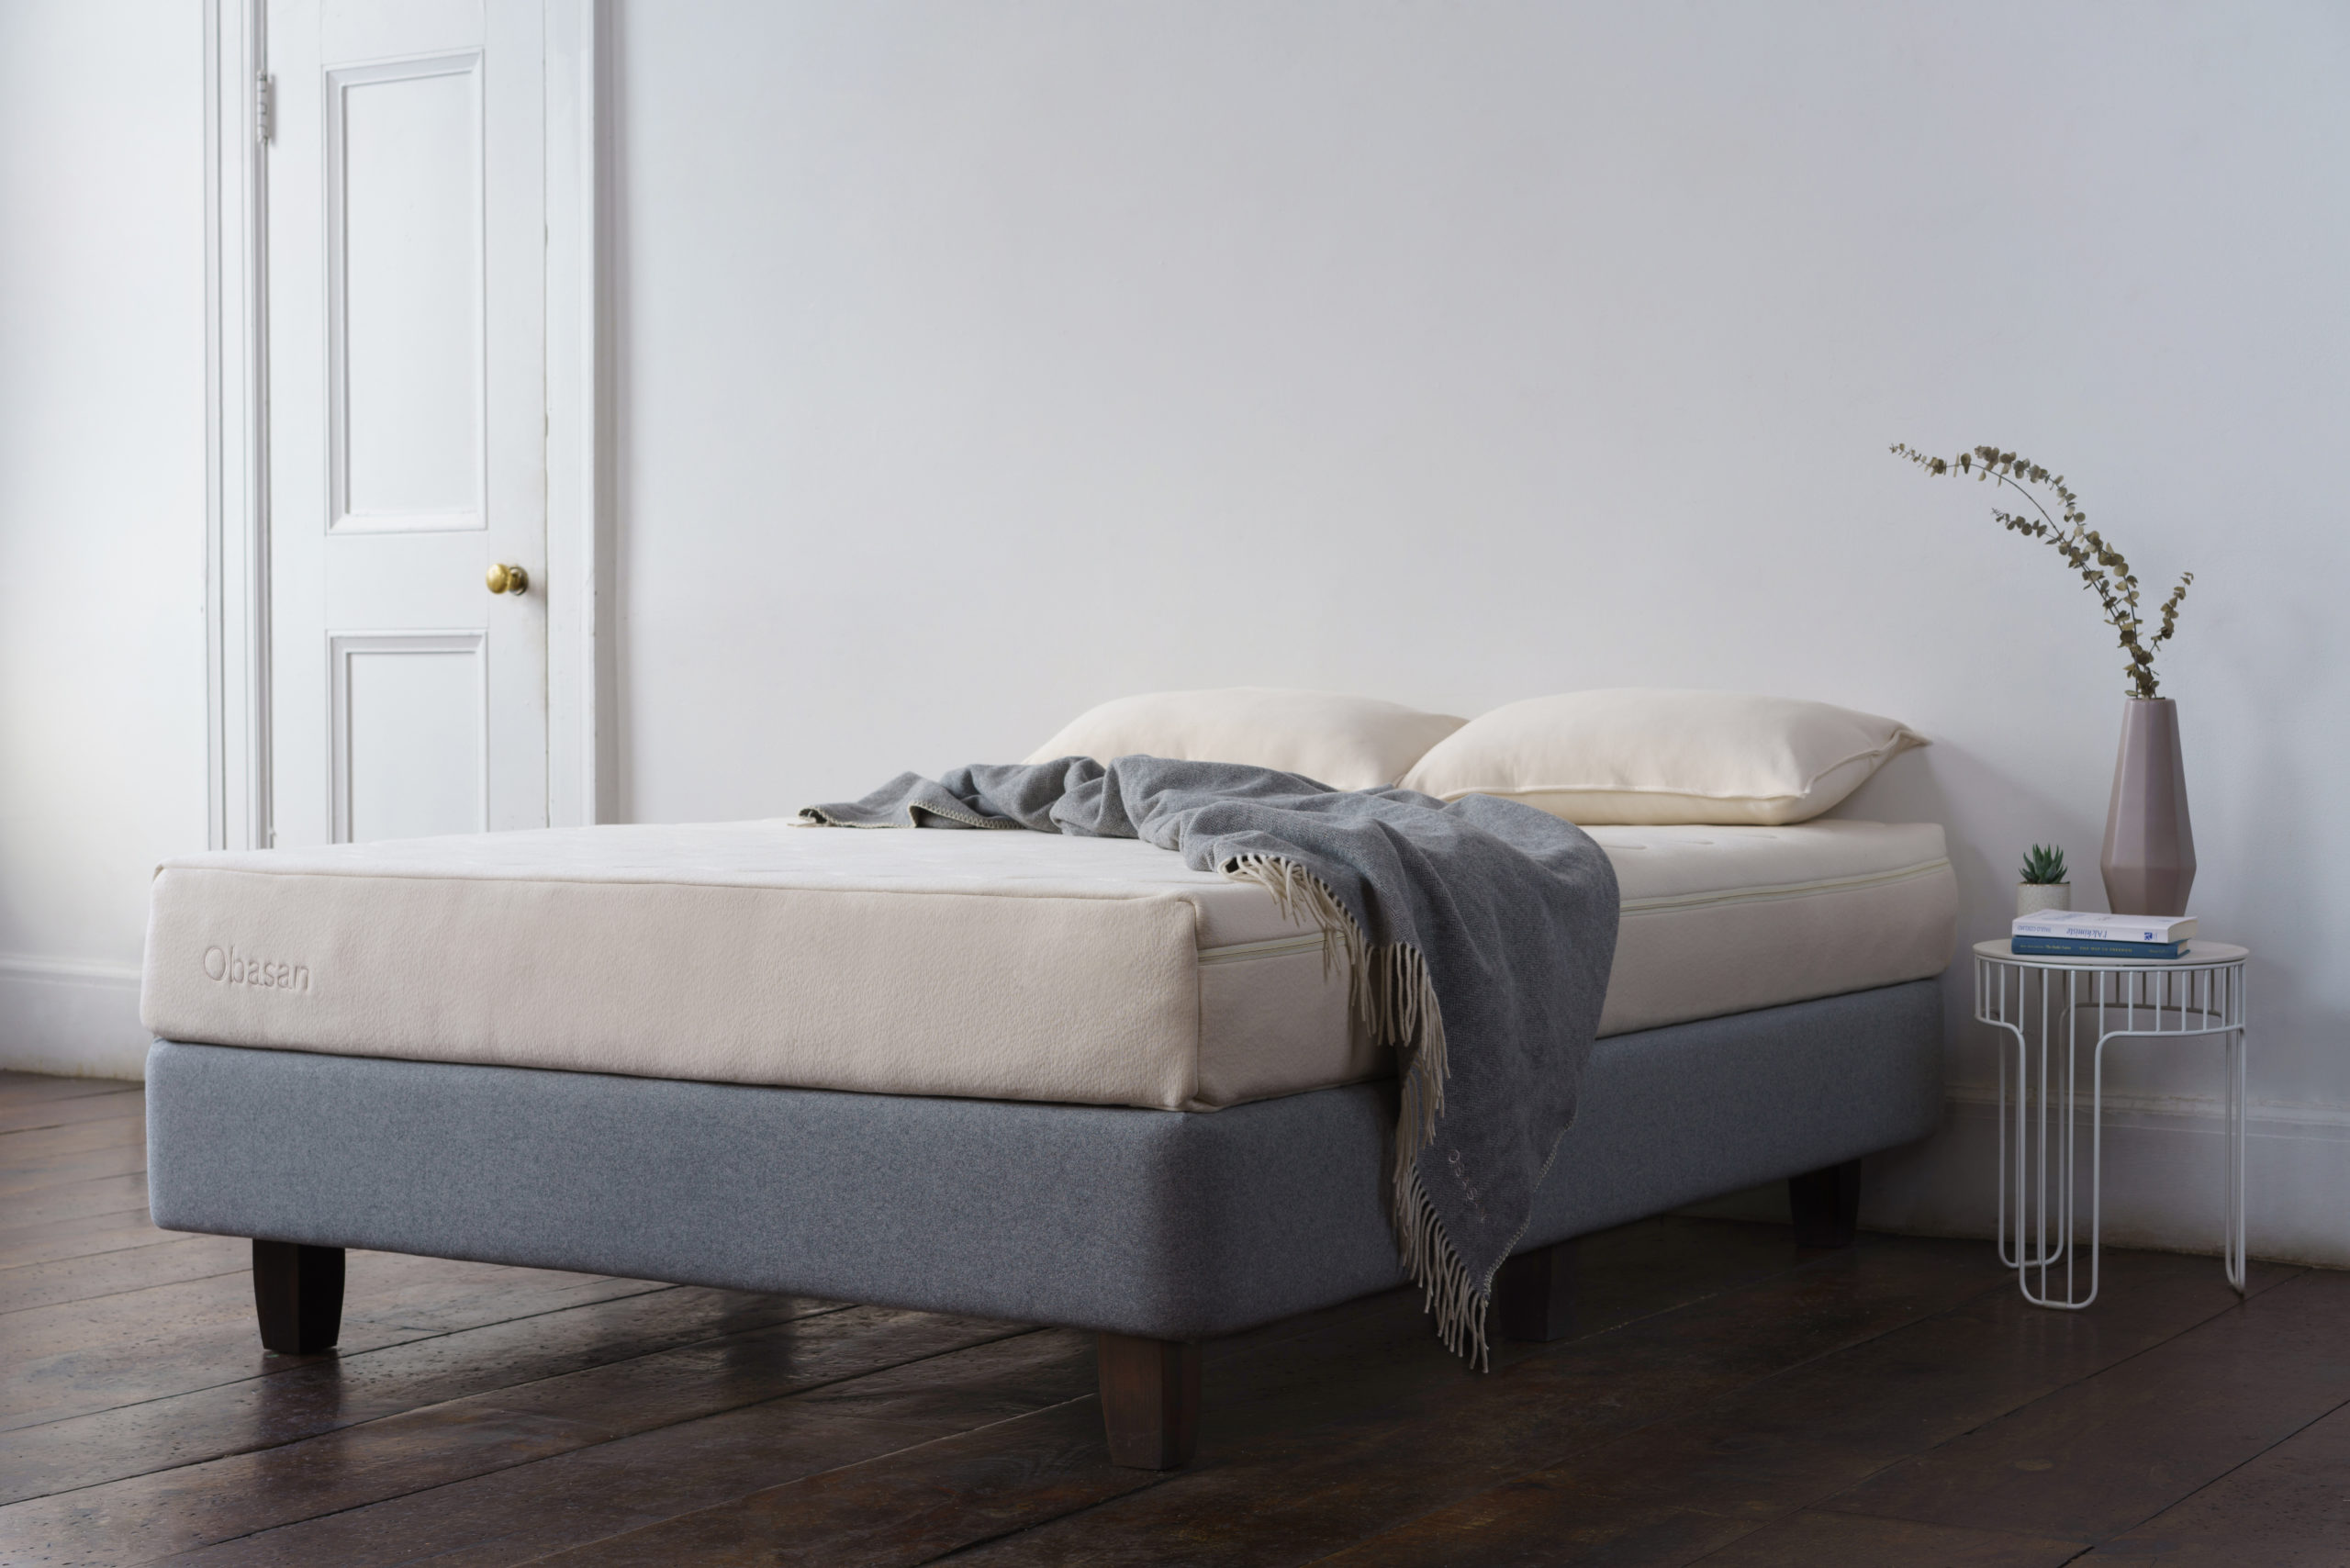 obasan 12 inch mattress